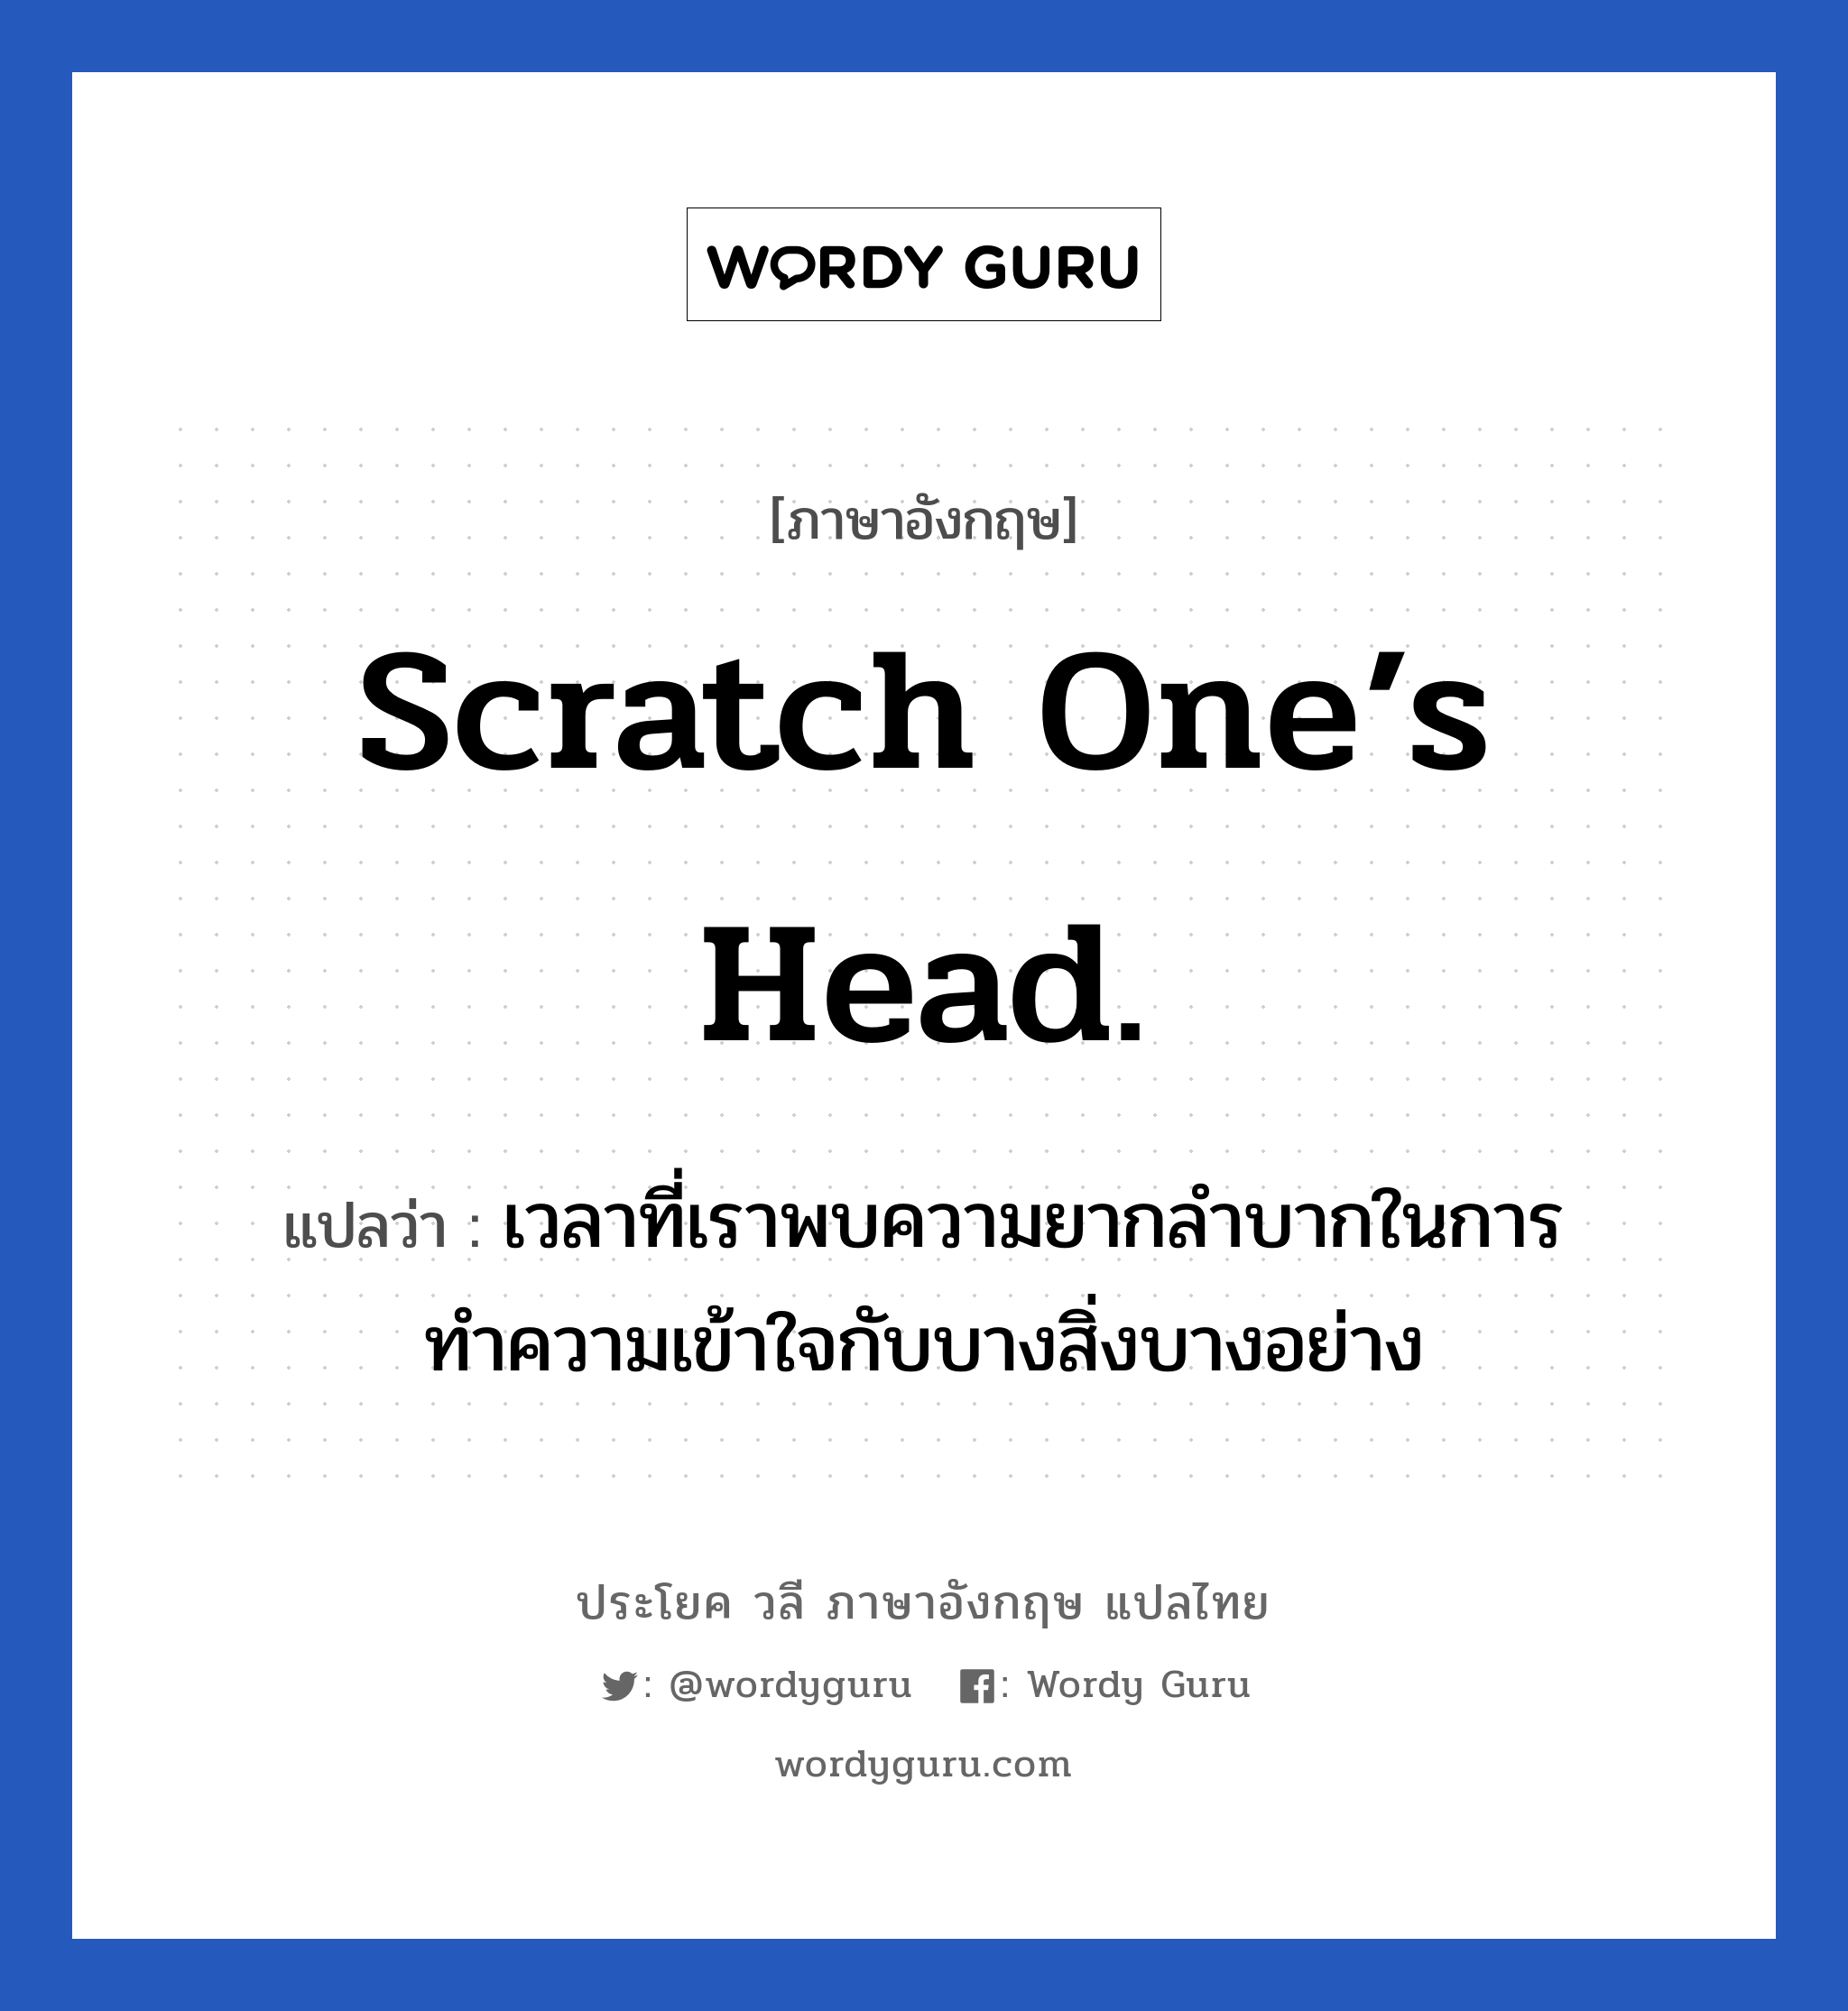 เวลาที่เราพบความยากลำบากในการทำความเข้าใจกับบางสิ่งบางอย่าง ภาษาอังกฤษ?, วลีภาษาอังกฤษ เวลาที่เราพบความยากลำบากในการทำความเข้าใจกับบางสิ่งบางอย่าง แปลว่า Scratch one’s head.